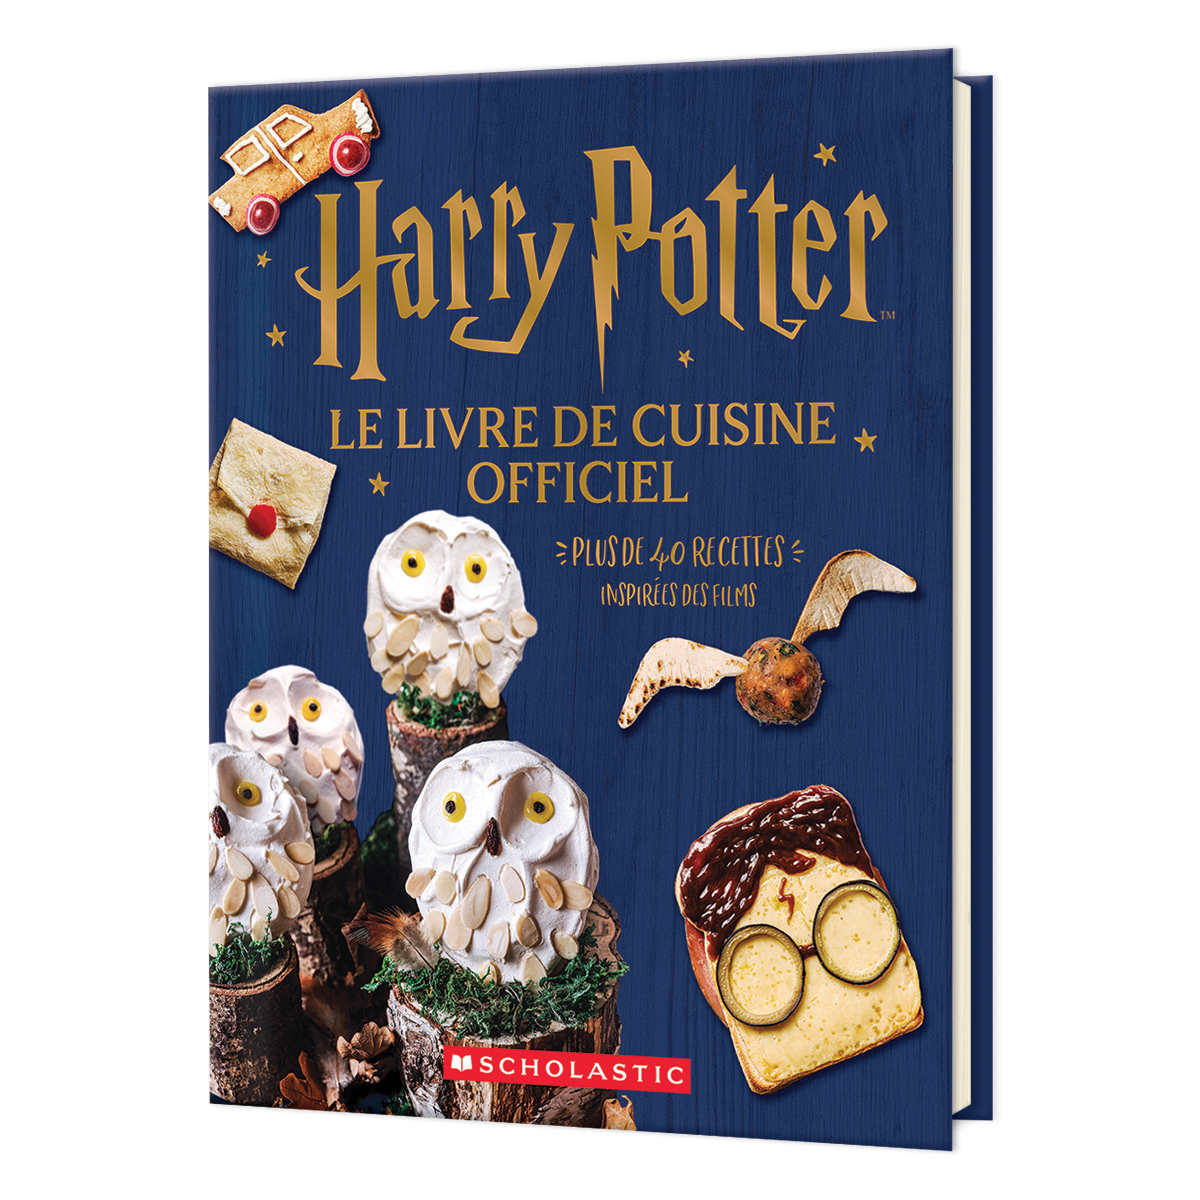  Harry Potter : Le livre de cuisine officiel 